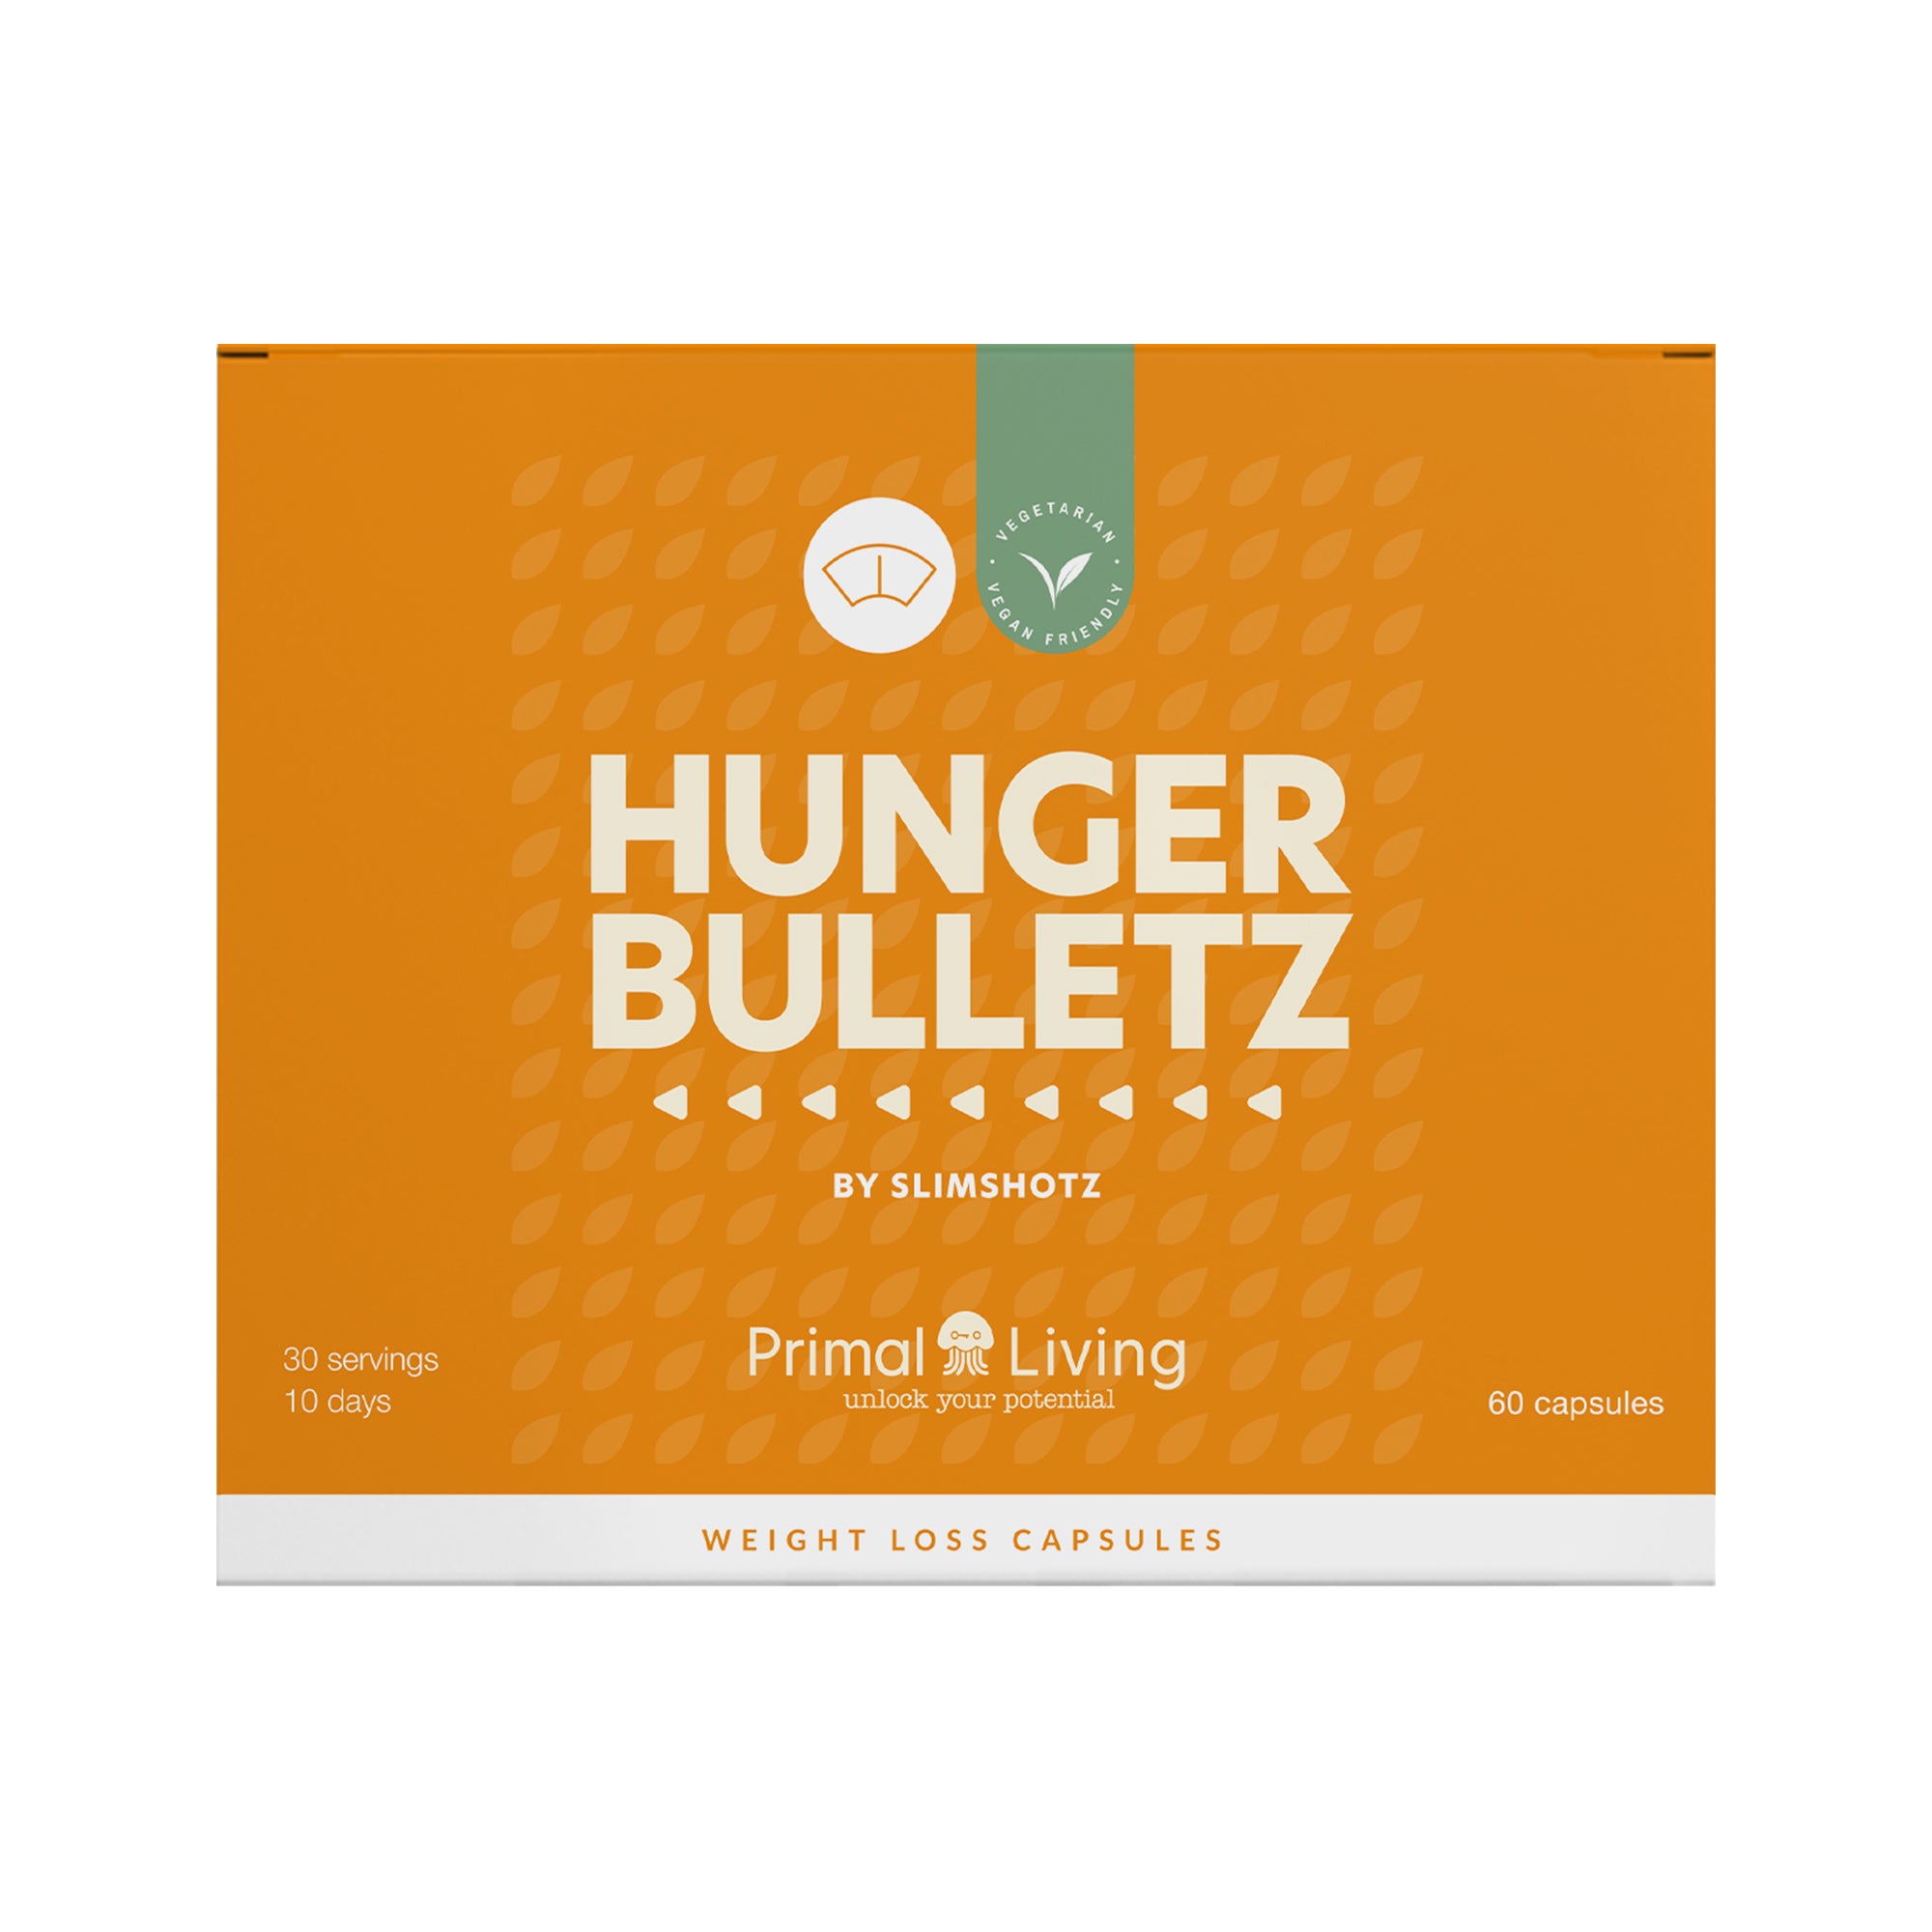 Hunger Bulletz by Slimshotz